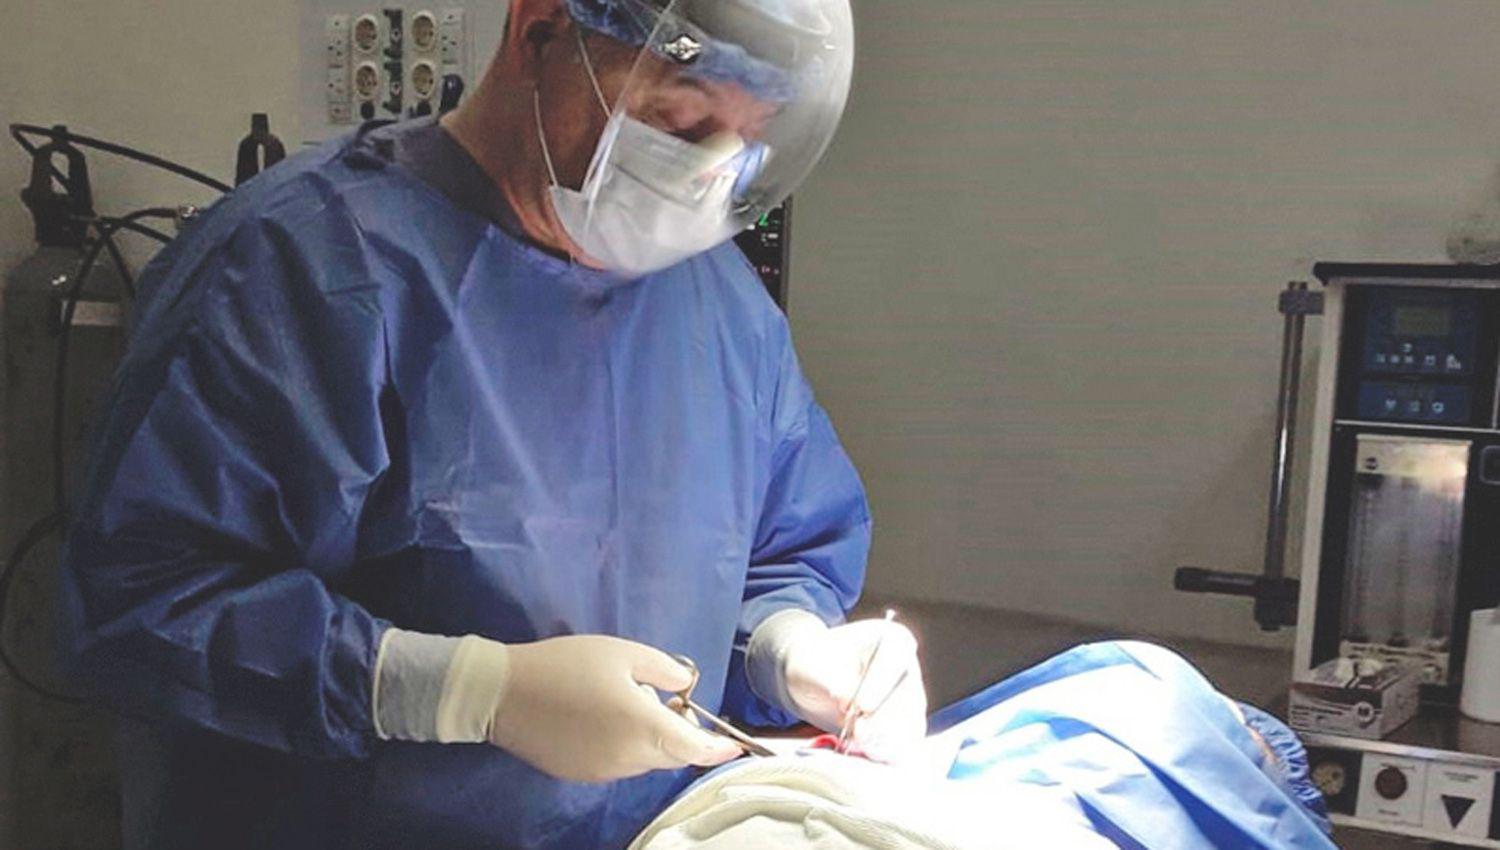 Meacutedicos santiaguentildeos realizan una cirugiacutea de alta complejidad por primera vez en el CIS Banda